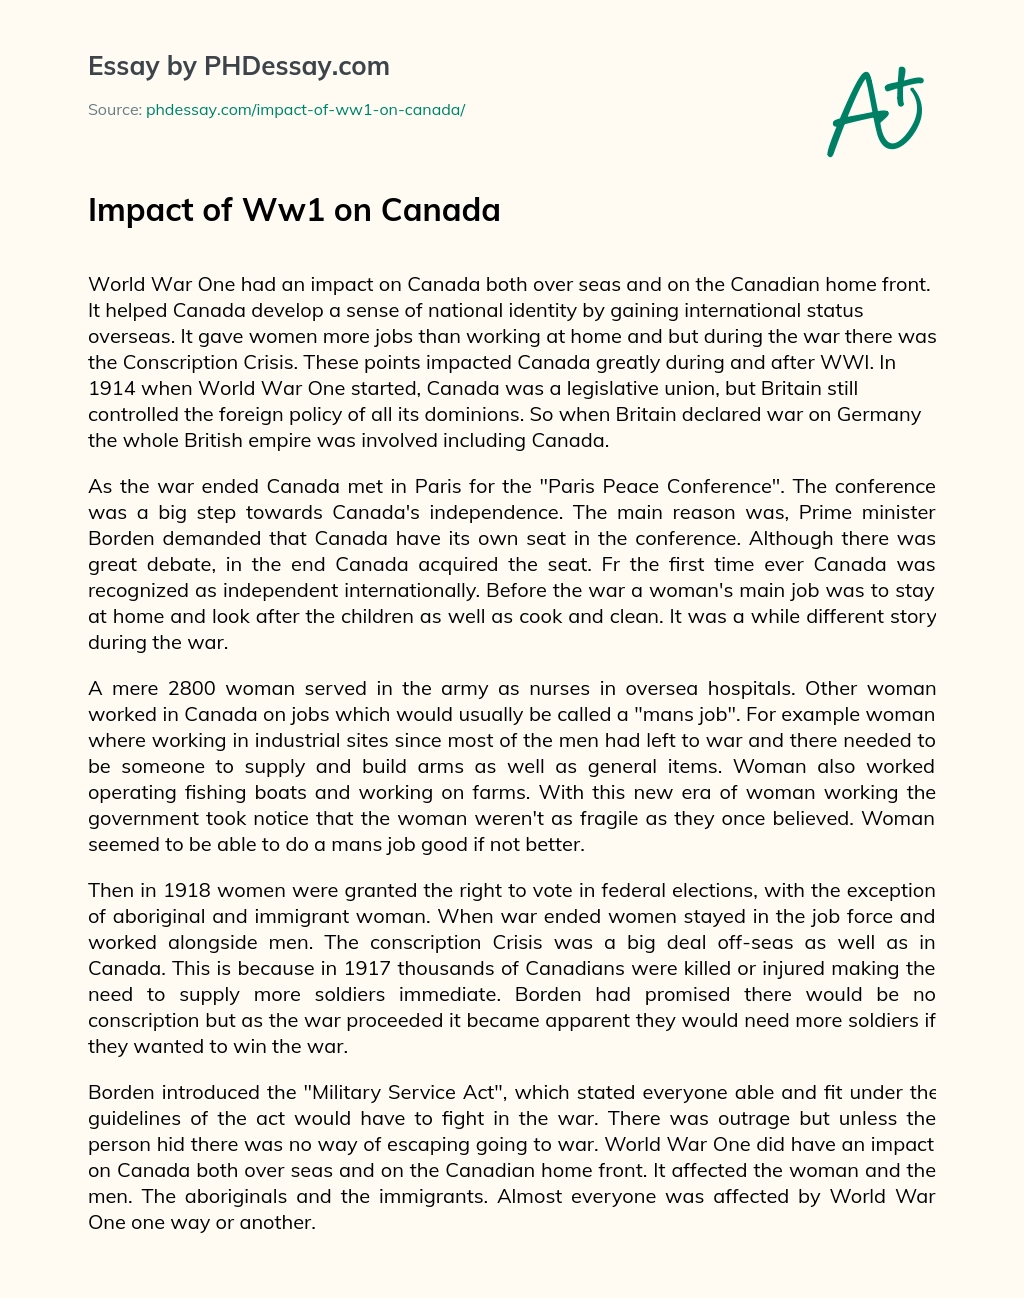 Impact of Ww1 on Canada essay